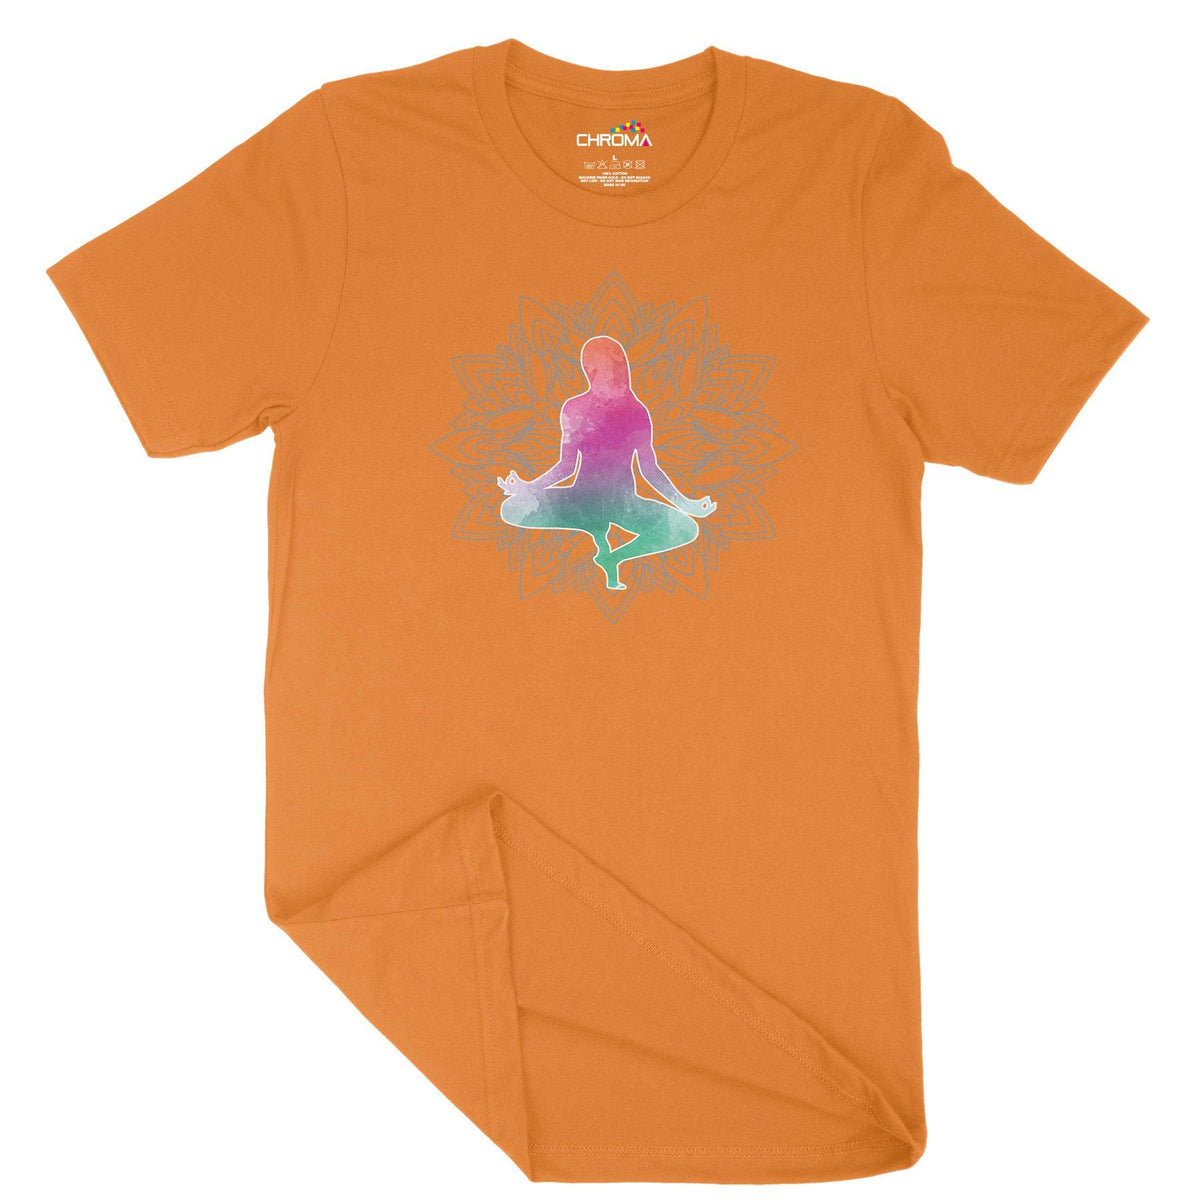 Yoga Asanas Unisex Adult T-Shirt Chroma Clothing